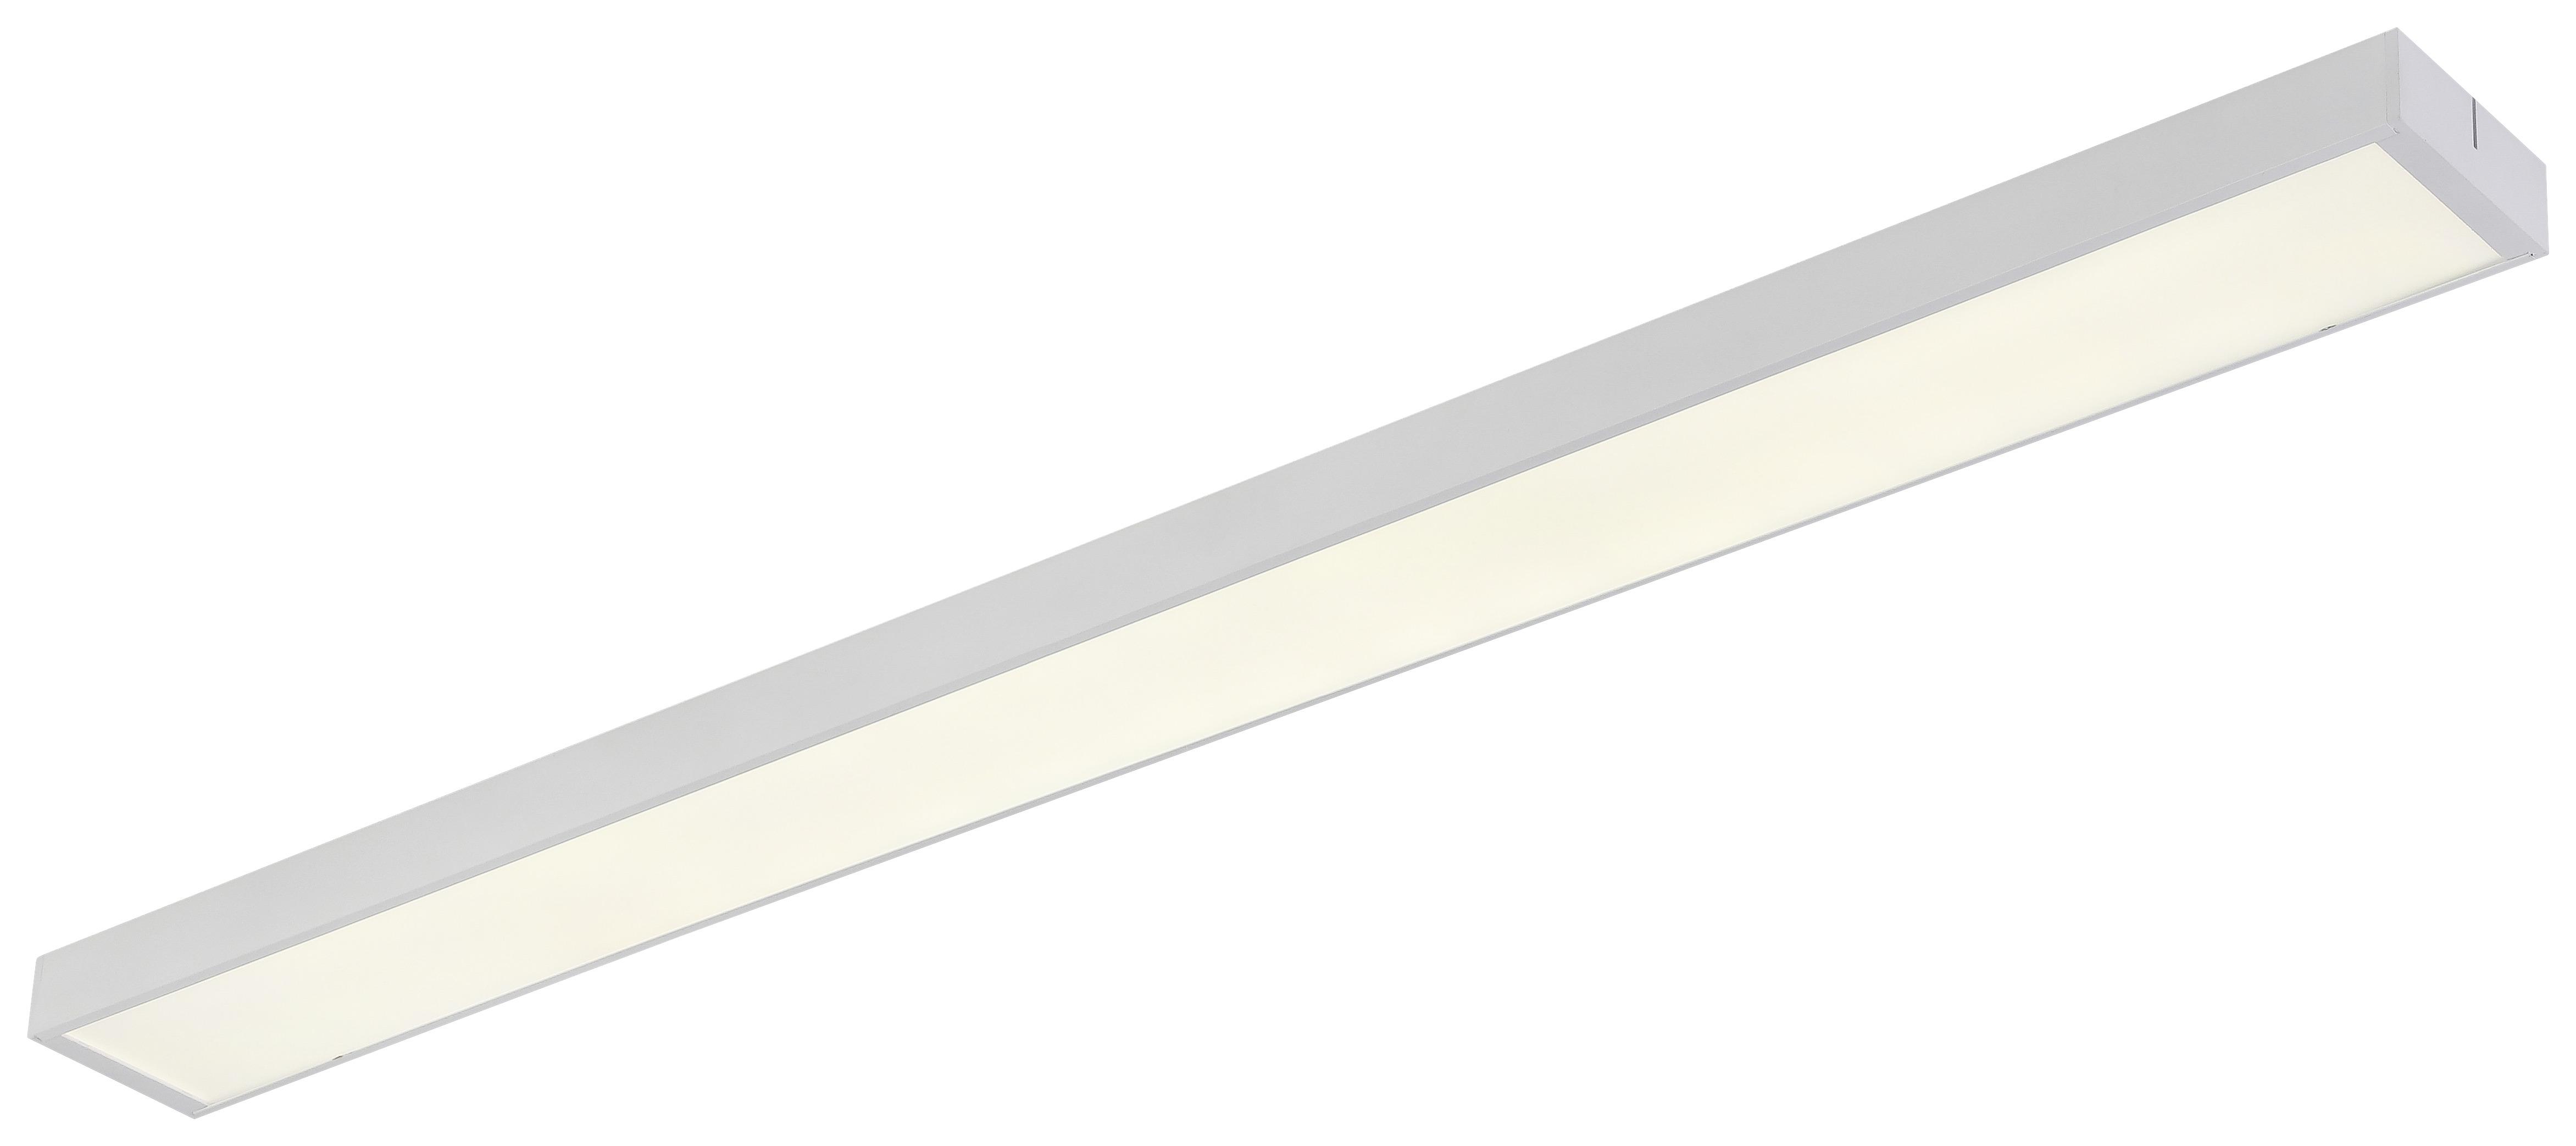 LED-Deckenleuchte Danila max. 38 Watt - Weiss, Modern, Kunststoff/Metall (118/10/4cm) - Modern Living